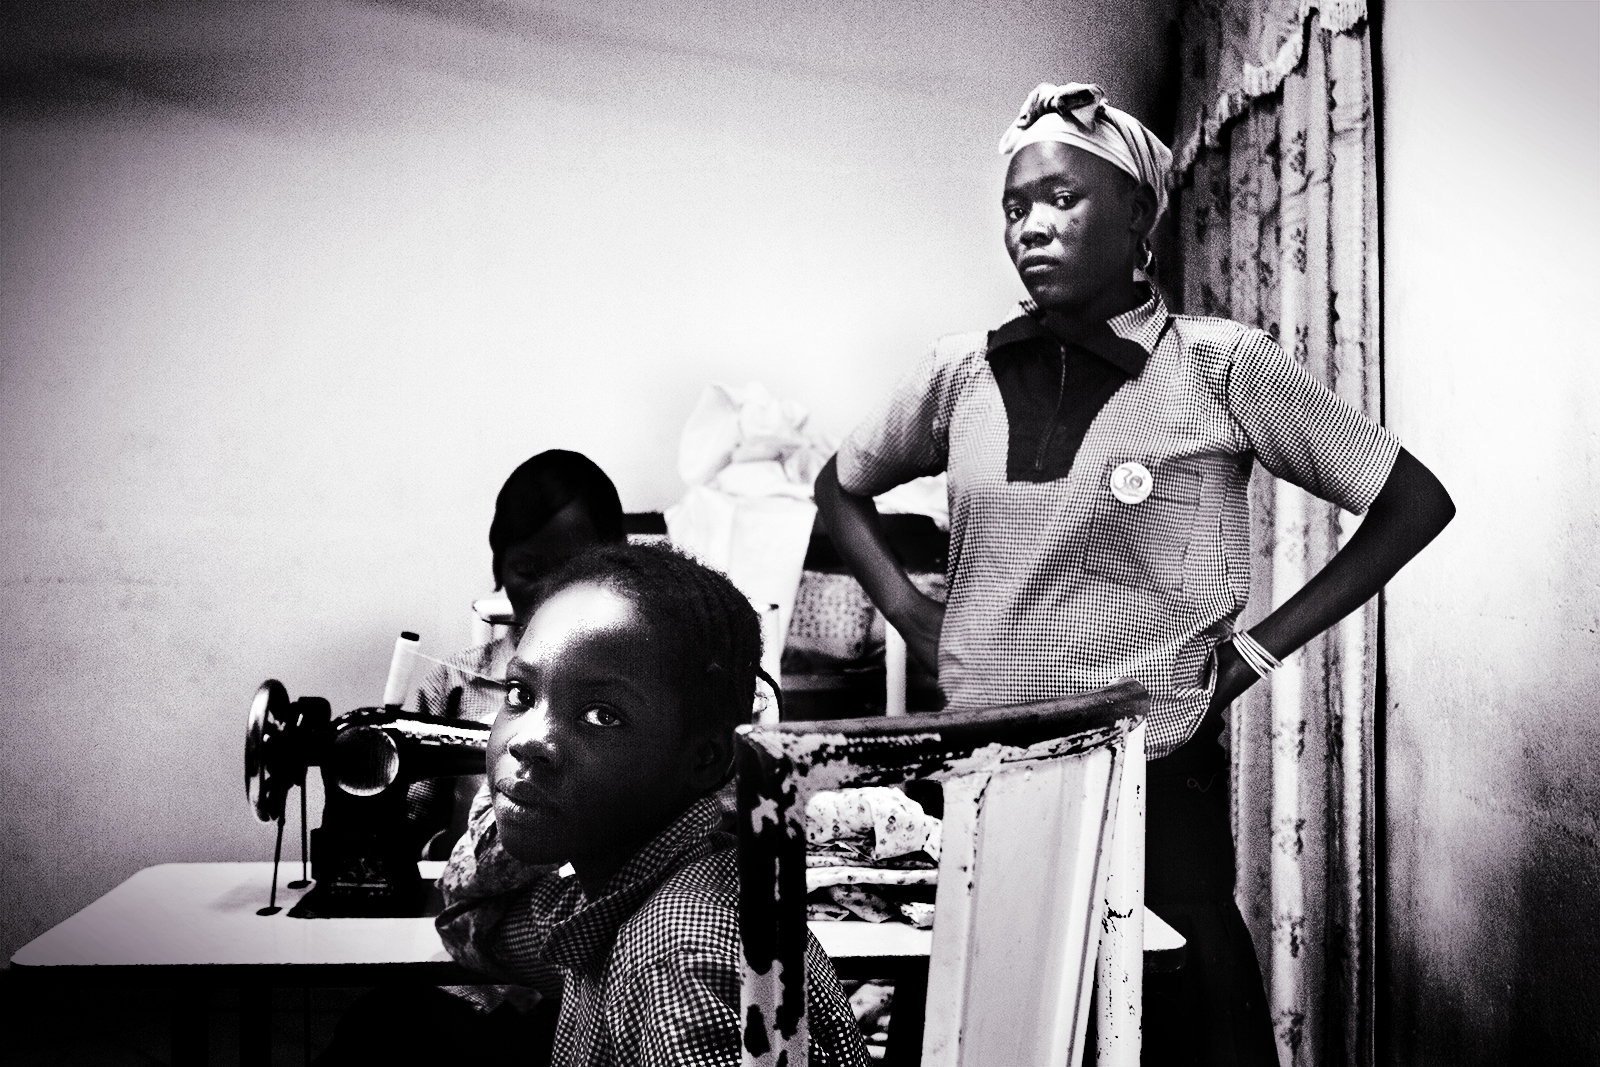 CASA FAMIGLIA
Ouagadougou, Burkina Faso
Studentesse della Casa Famiglia Shalom
In Burkina Faso è sempre più diffuso il fenomeno della migrazione dai villaggi nella speranza di migliorare la propria condizione di vita, aspettativa che spesso rimane delusa.
Ragazzi, spesso orfani ed abbandonati, lasciano i villaggi per venire in città o vengono abbandonati dalle famiglie che non riescono a soddisfare i loro bisogni. Si ritrovano così a vivere di espedienti per le strade di Ouagadougou, finendo in molti casi vittime di abusi.
Il Movimento Shalom Onlus e Italsilva – azienda produttrice del marchio Spuma di Sciampagna, che festeggia così il suo primo secolo di vita – ha realizzato questa Casa Famiglia che accoglie ogni anno 40 minori, individuati insieme ai Servizi Sociali, che oltre a venire seguiti dal punto di vista alimentare e scolastico, ricevono una formazione professionale.
Nel centro sono infatti presenti un laboratorio di sartoria, un calzaturificio, un laboratorio per fare il sapone e un panificio. Le attività produttive, oltre ad essere opportunità di formazione ed avviamento al lavoro, contribuiscono a sostenere l’intera struttura grazie alla vendita dei prodotti realizzati.